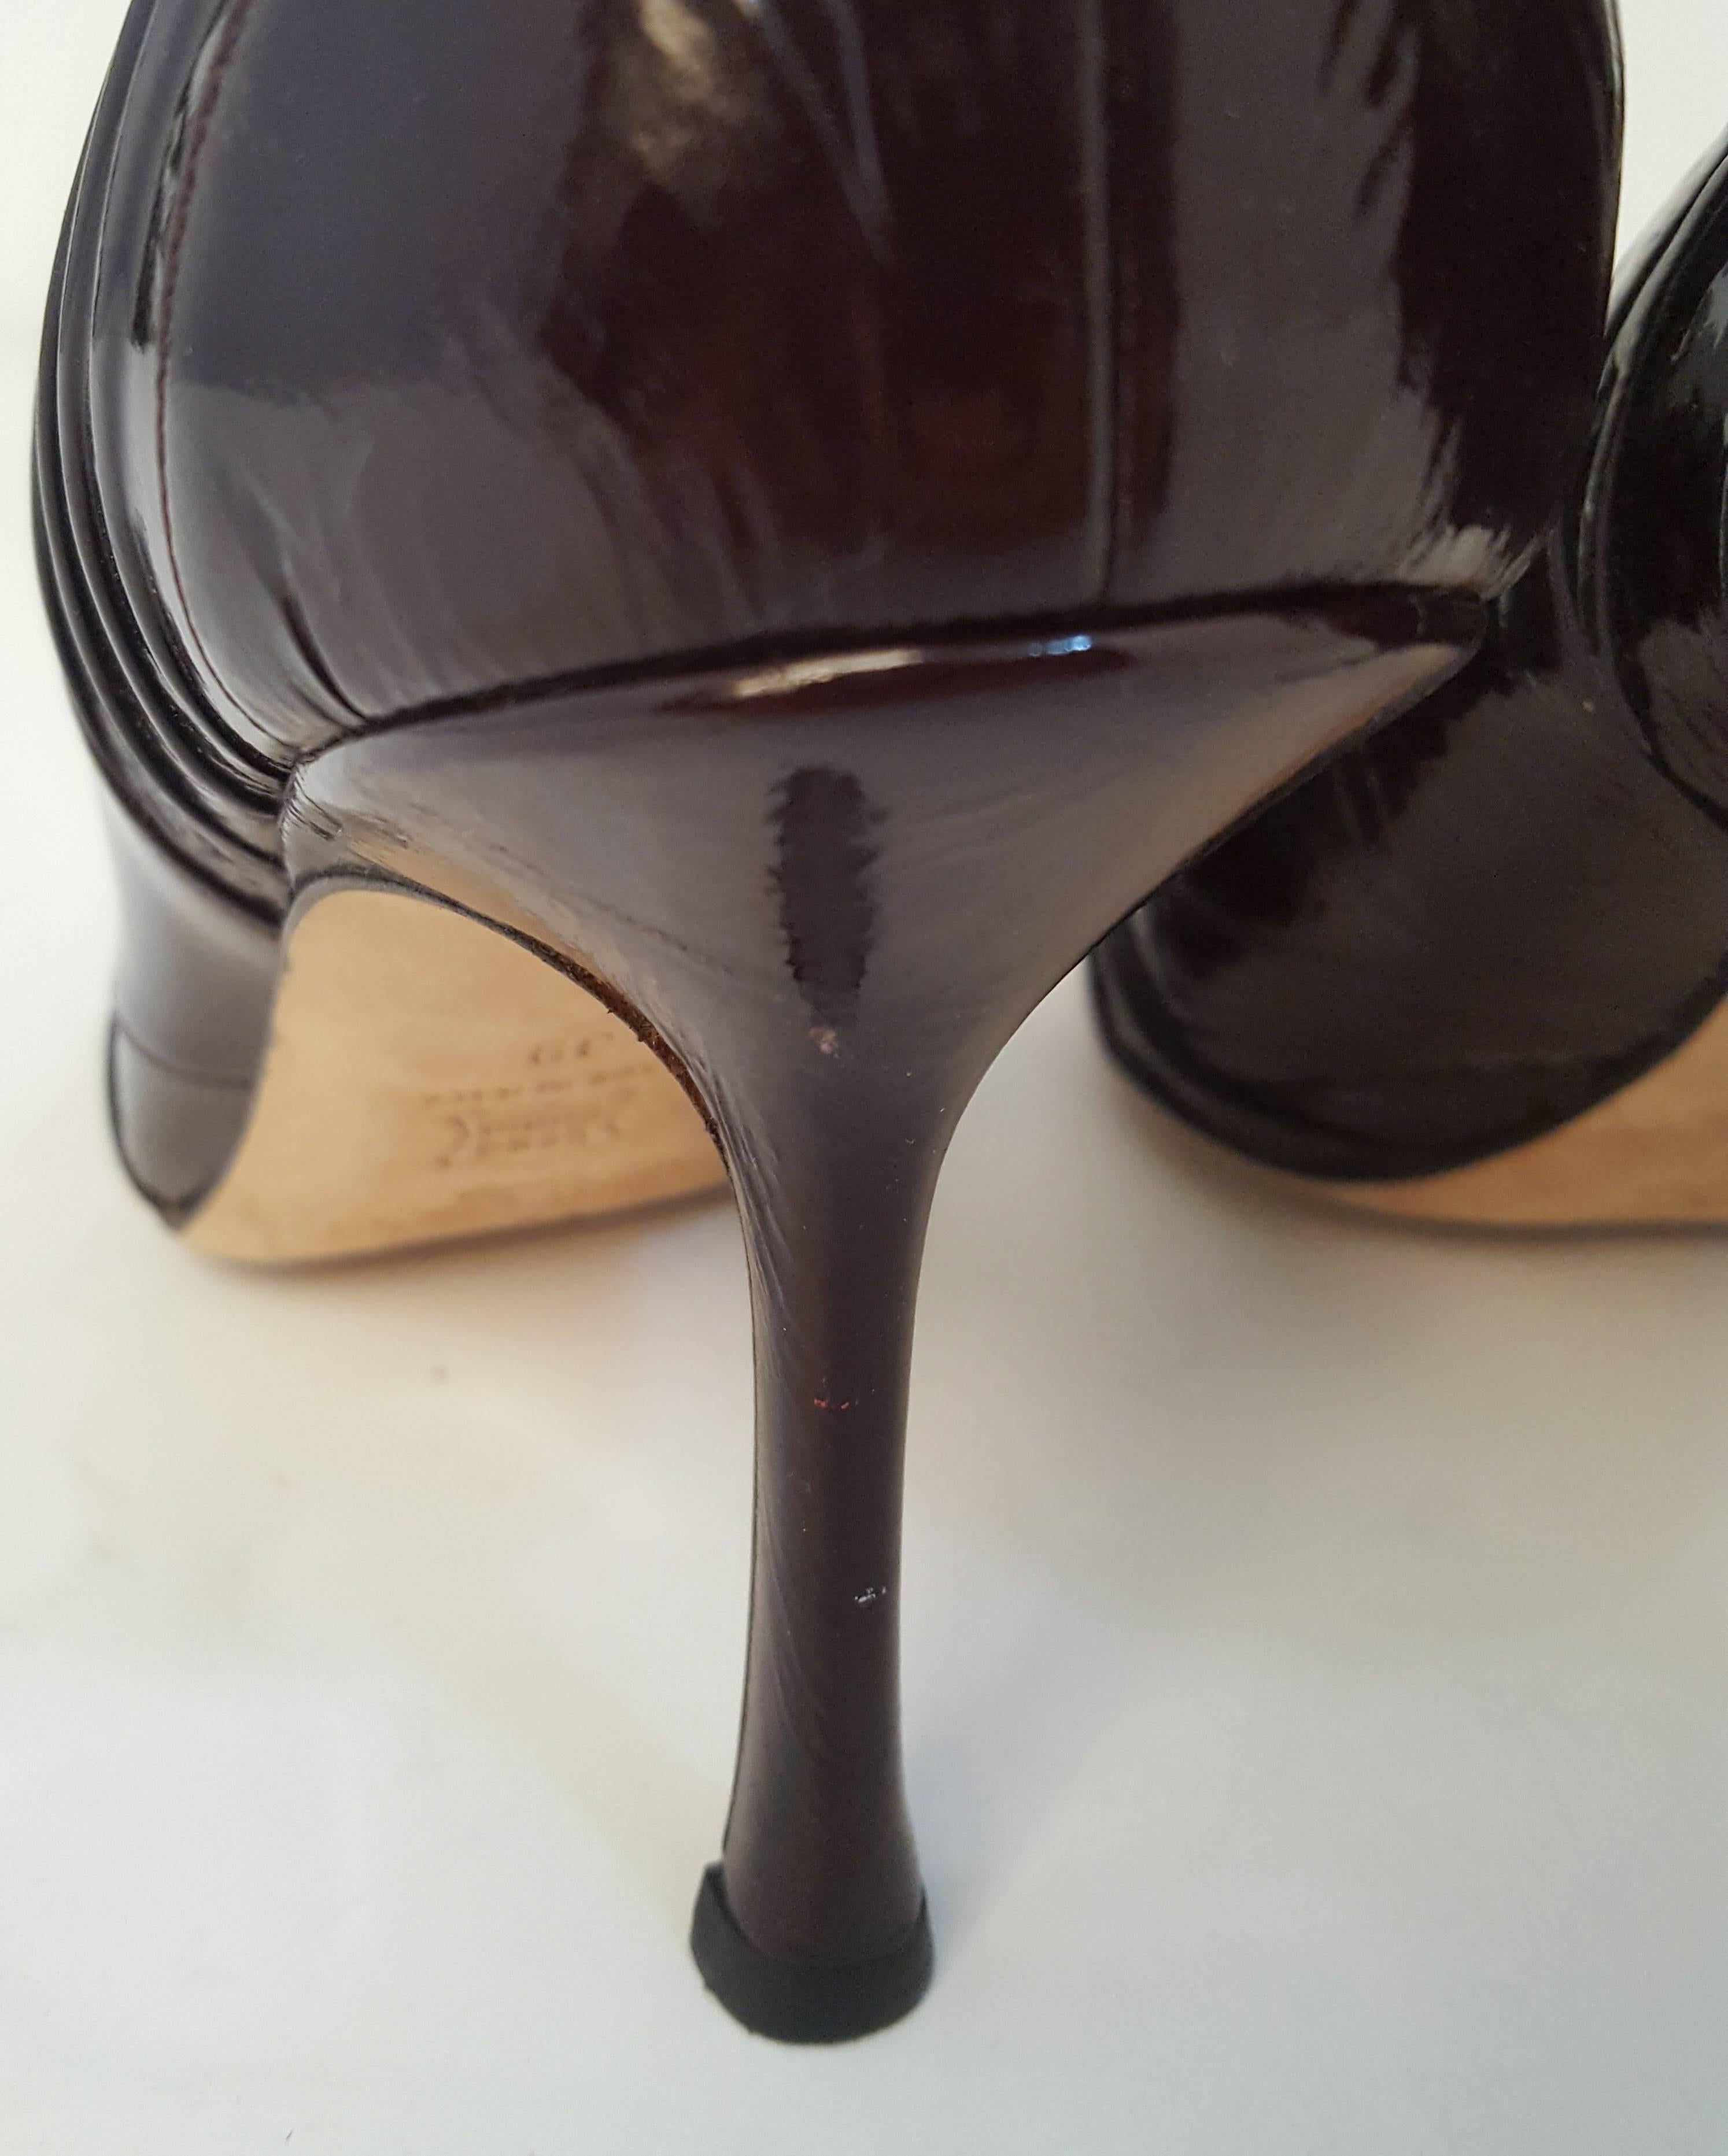 Women's Jimmy Choo Espresso Patent Leather Heels